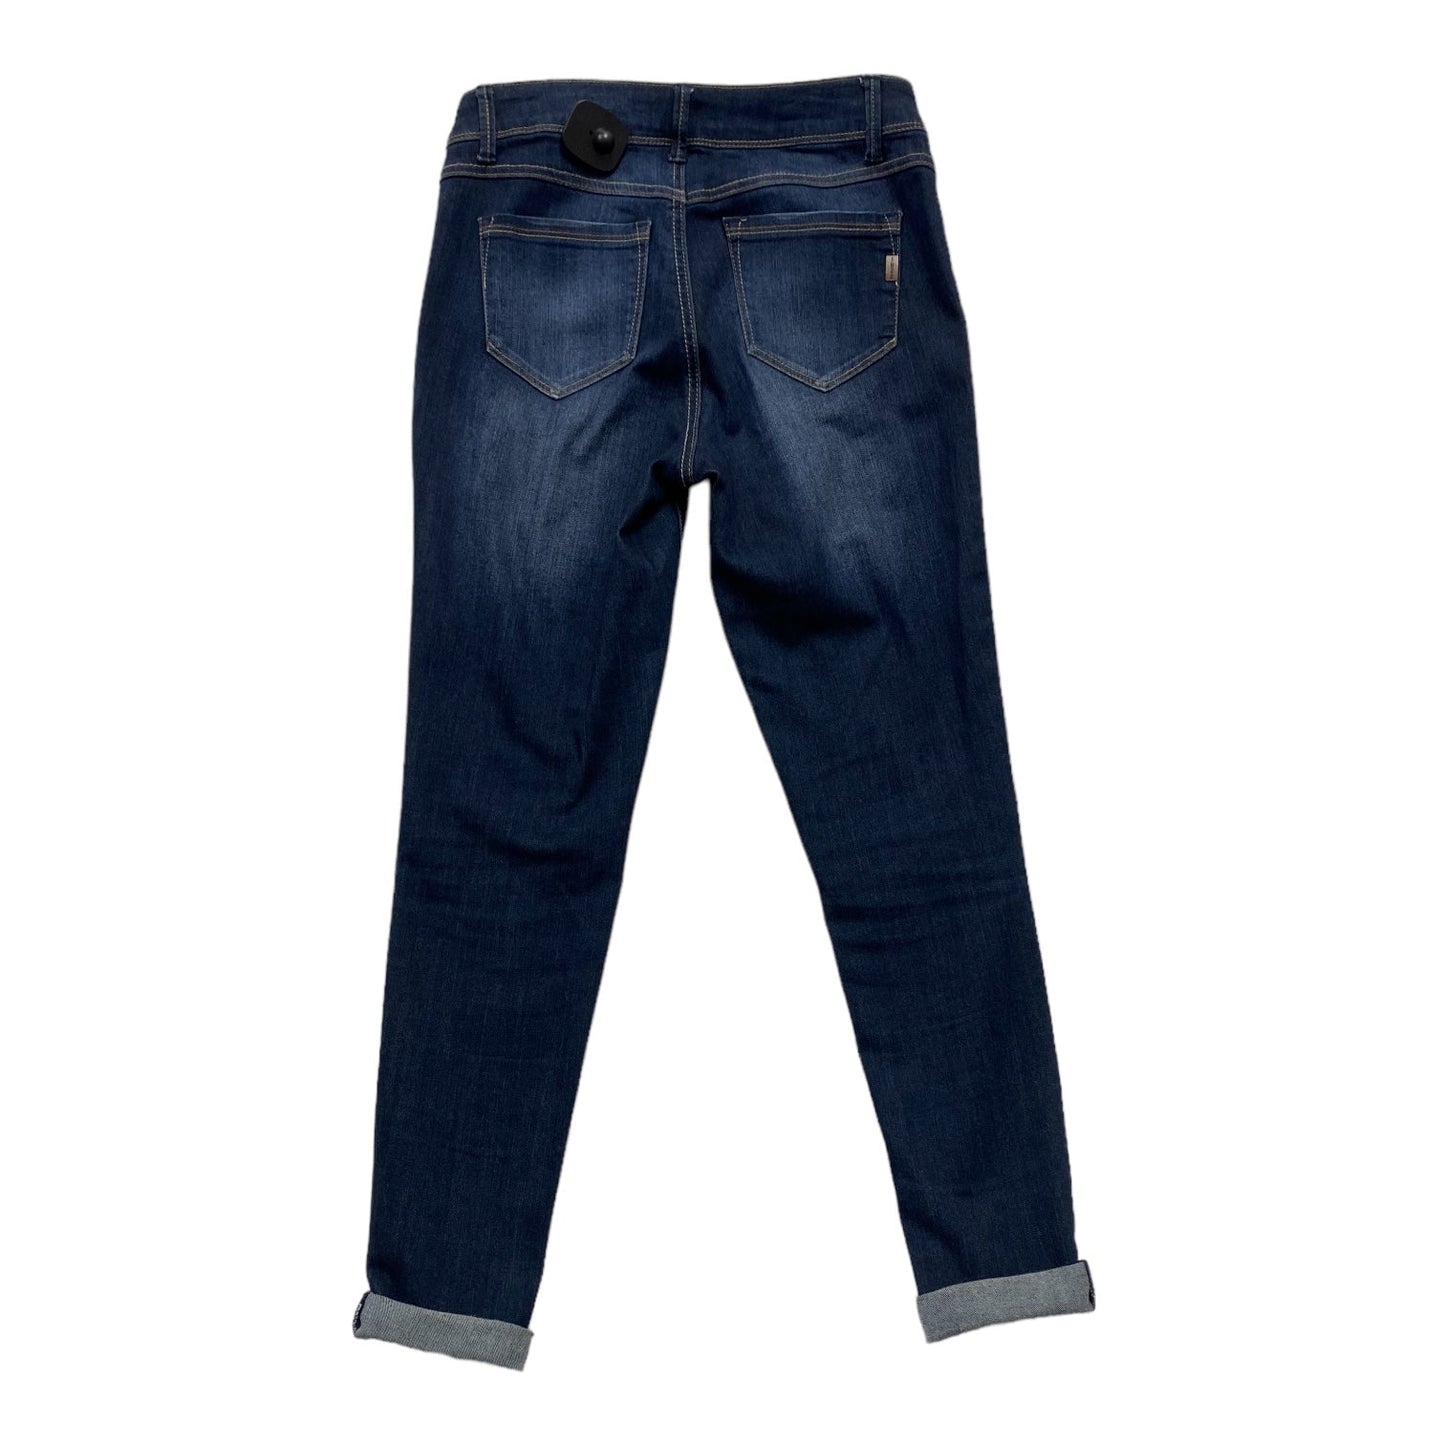 Jeans Skinny By 1822 Denim  Size: 4